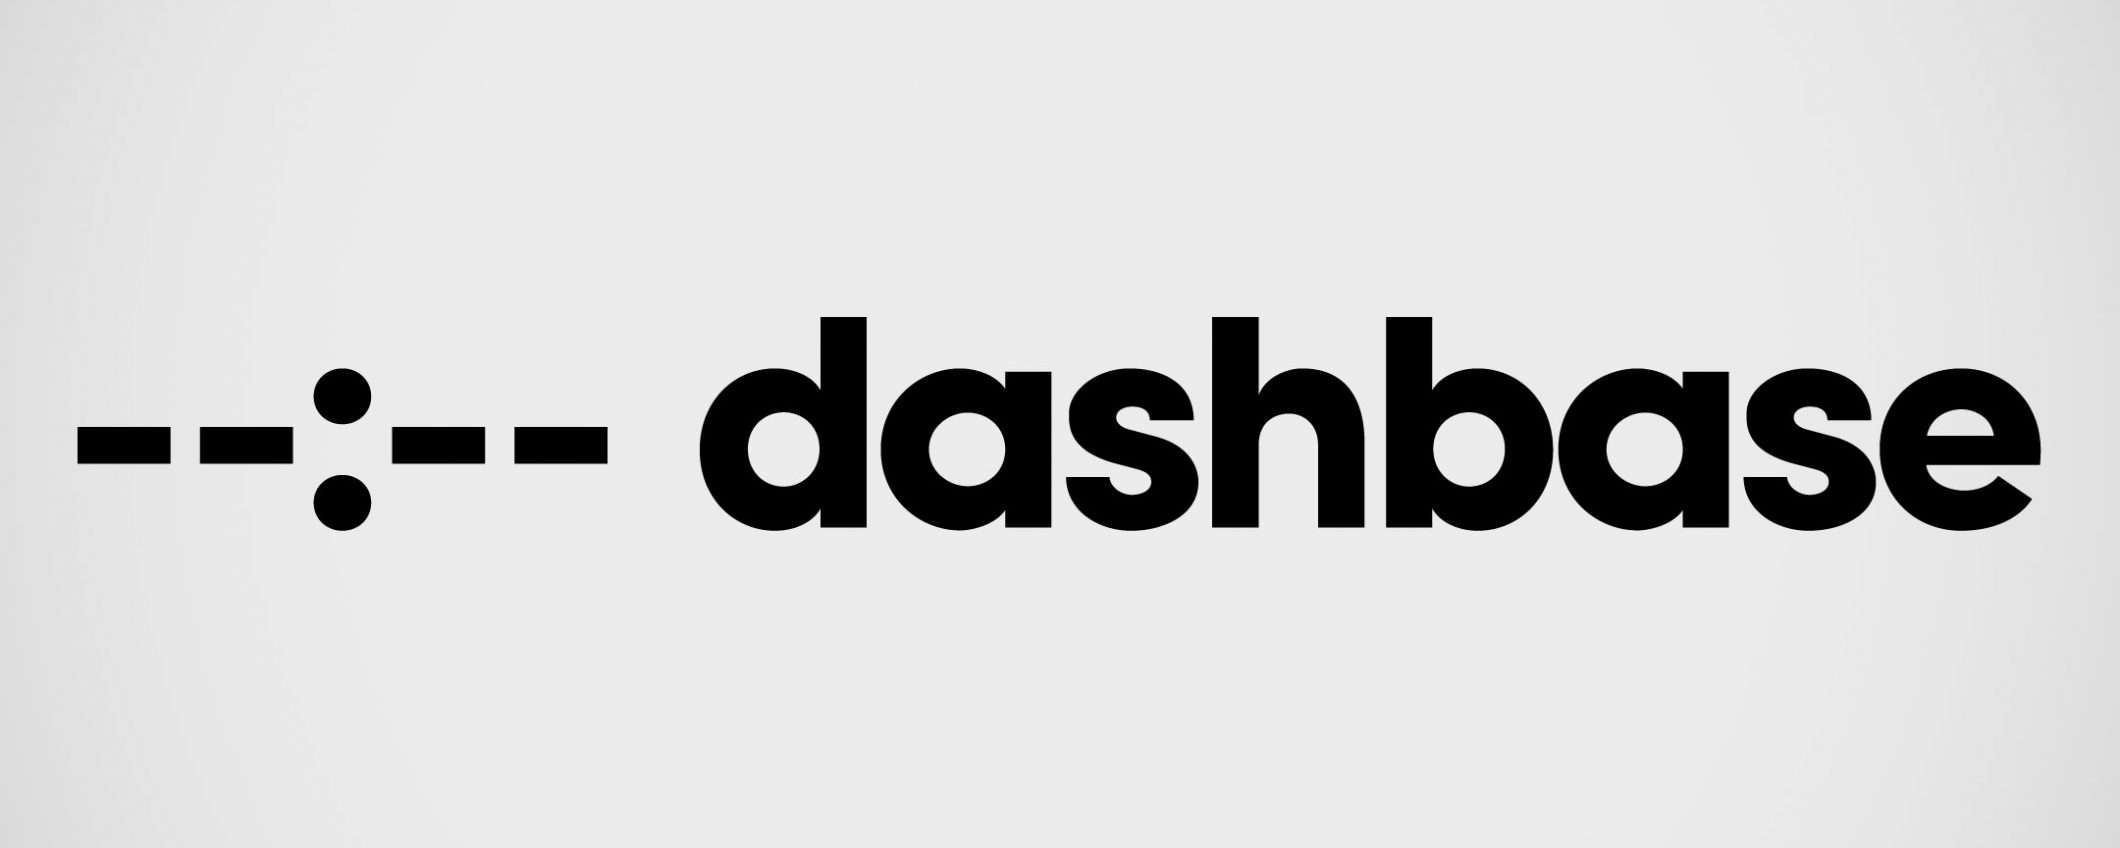 Dashbase è la nuova acquisizione di Cisco